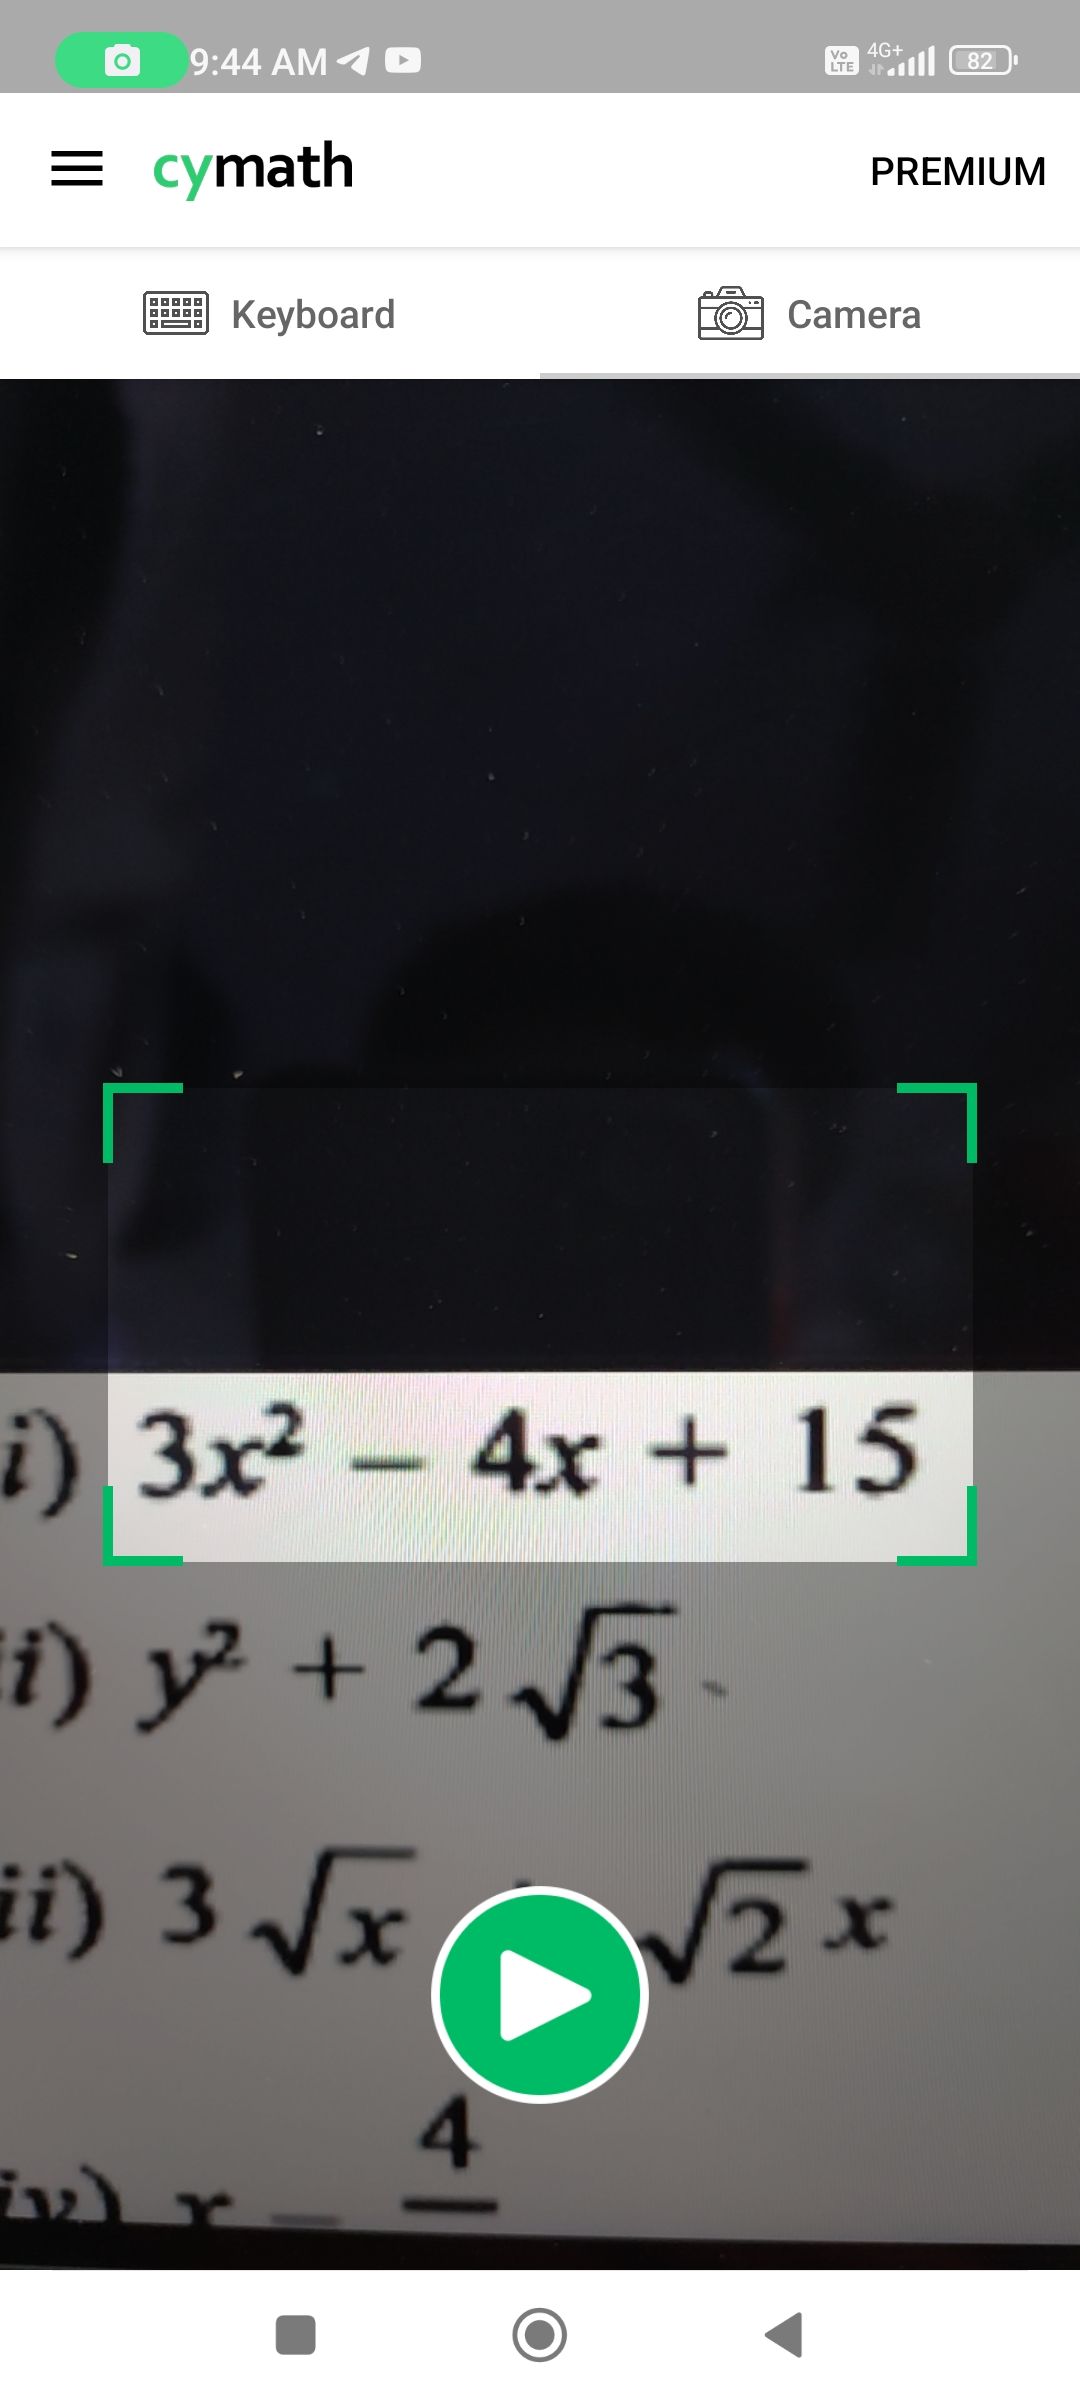 Cymath app scanning an equation